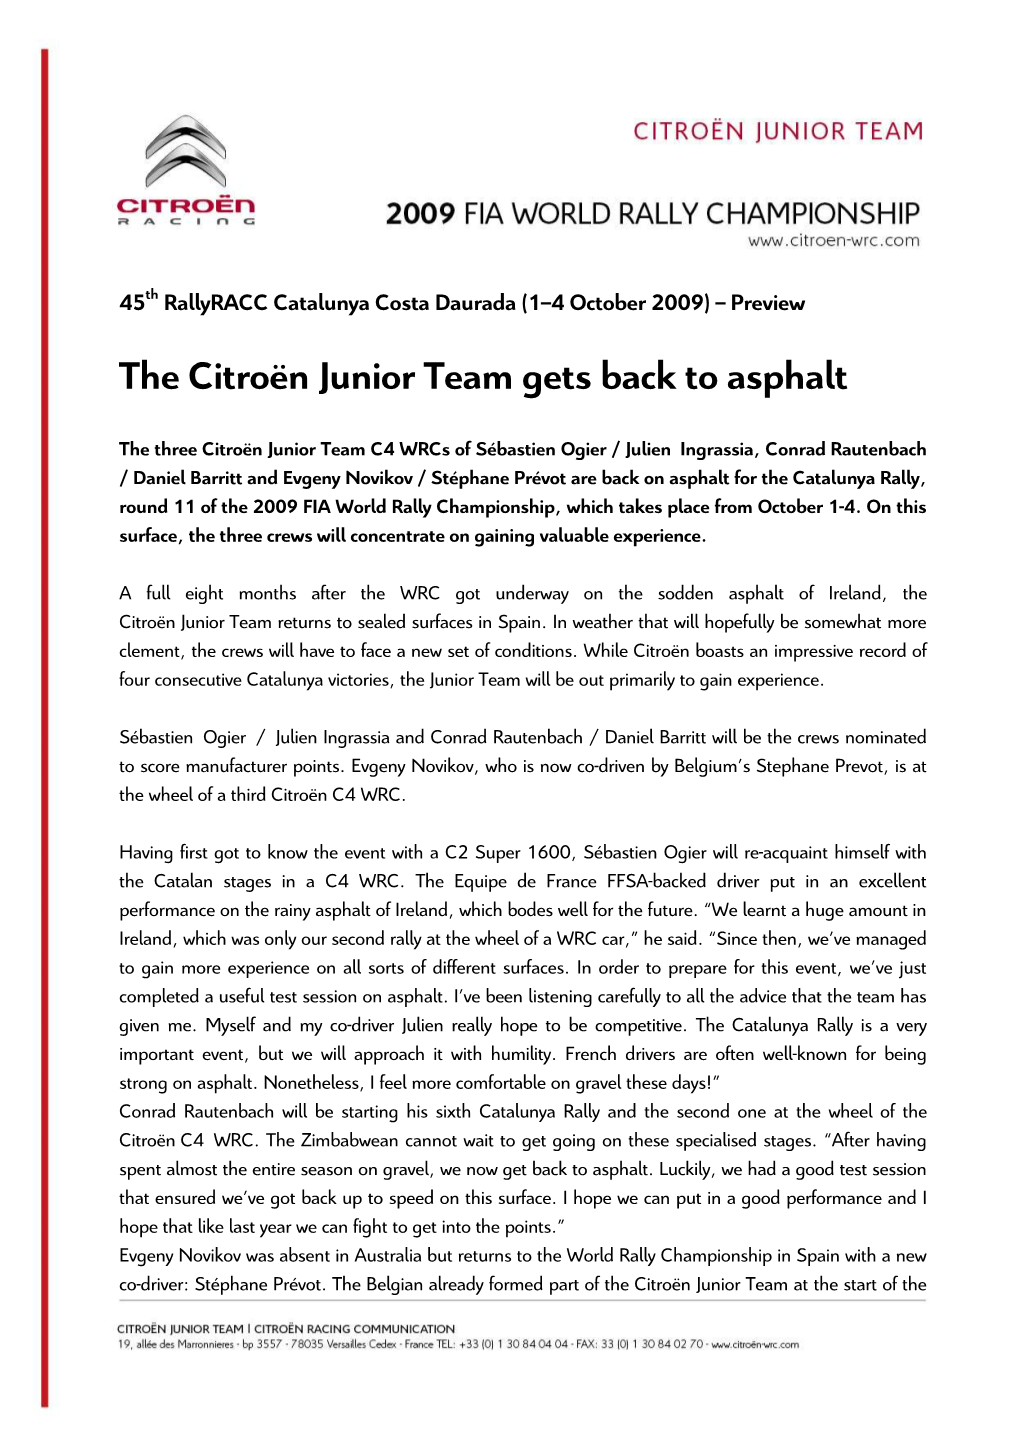 The Citroën Junior Team Gets Back to Asphalt